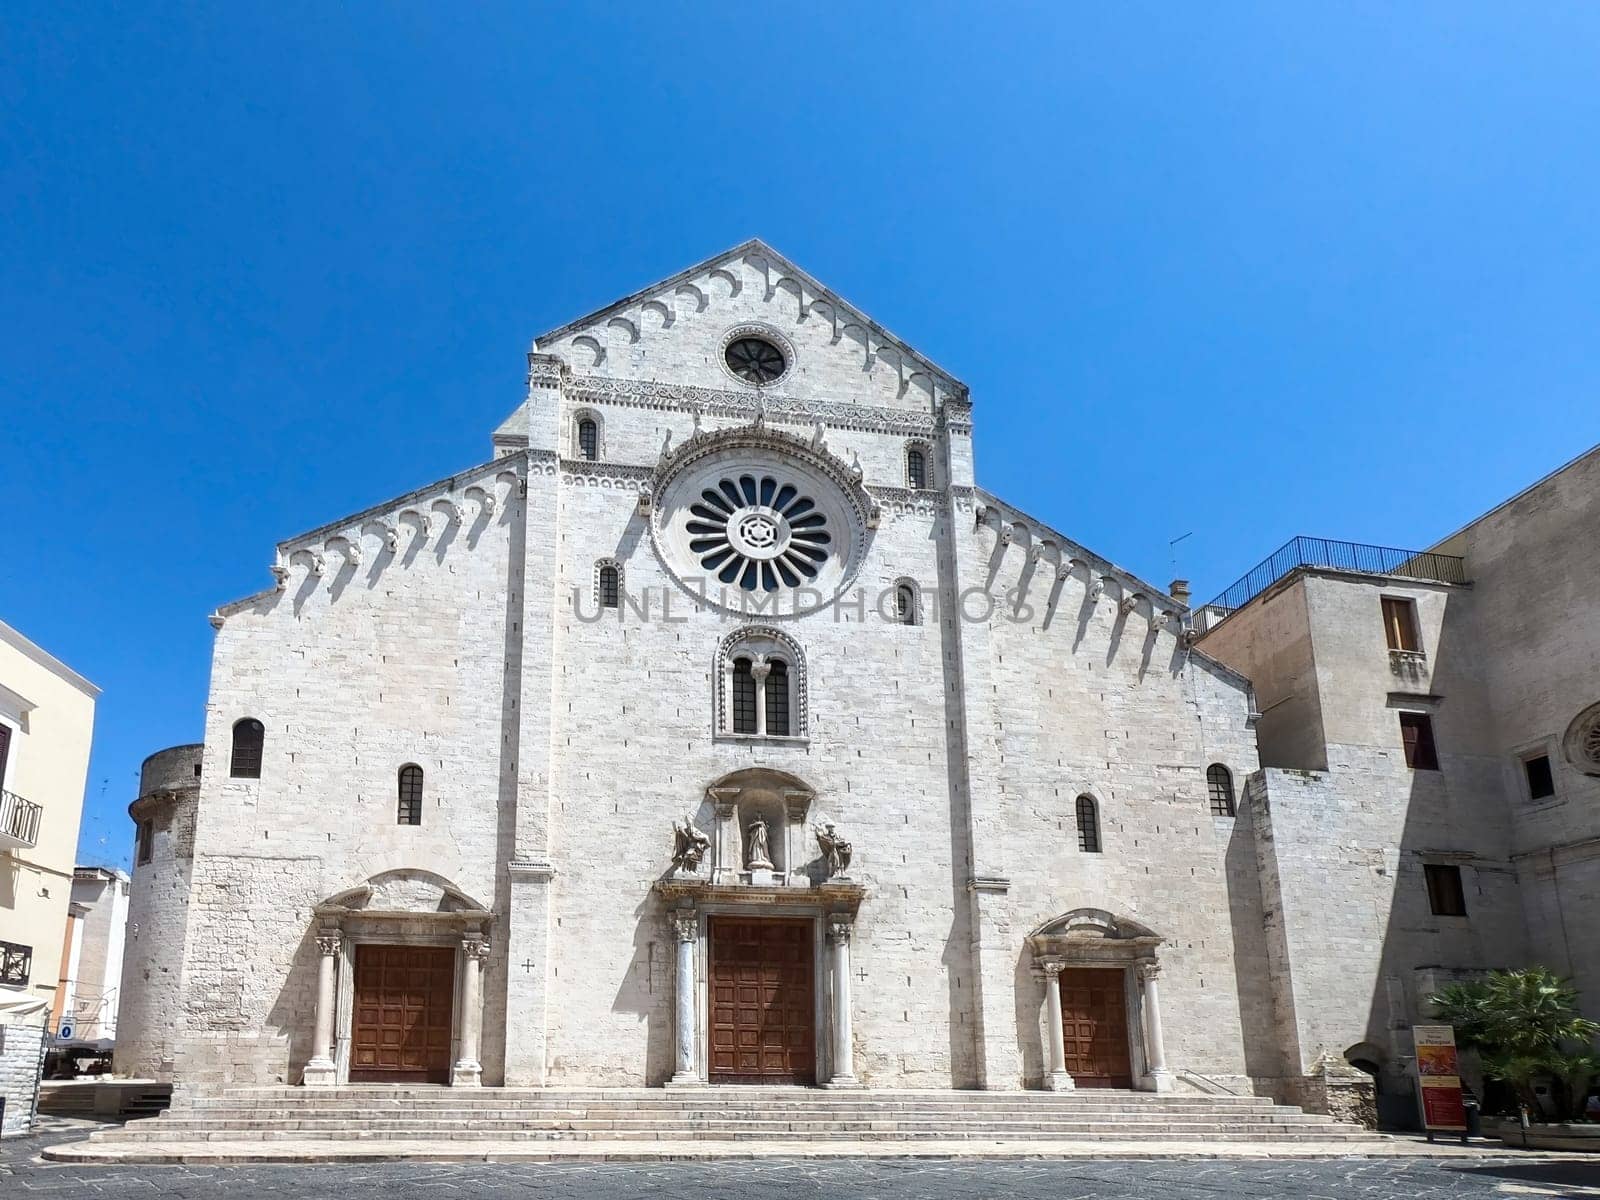 Cathedral of Saint Sabinus, Duomo di Bari or Cattedrale di San Sabino by Digoarpi